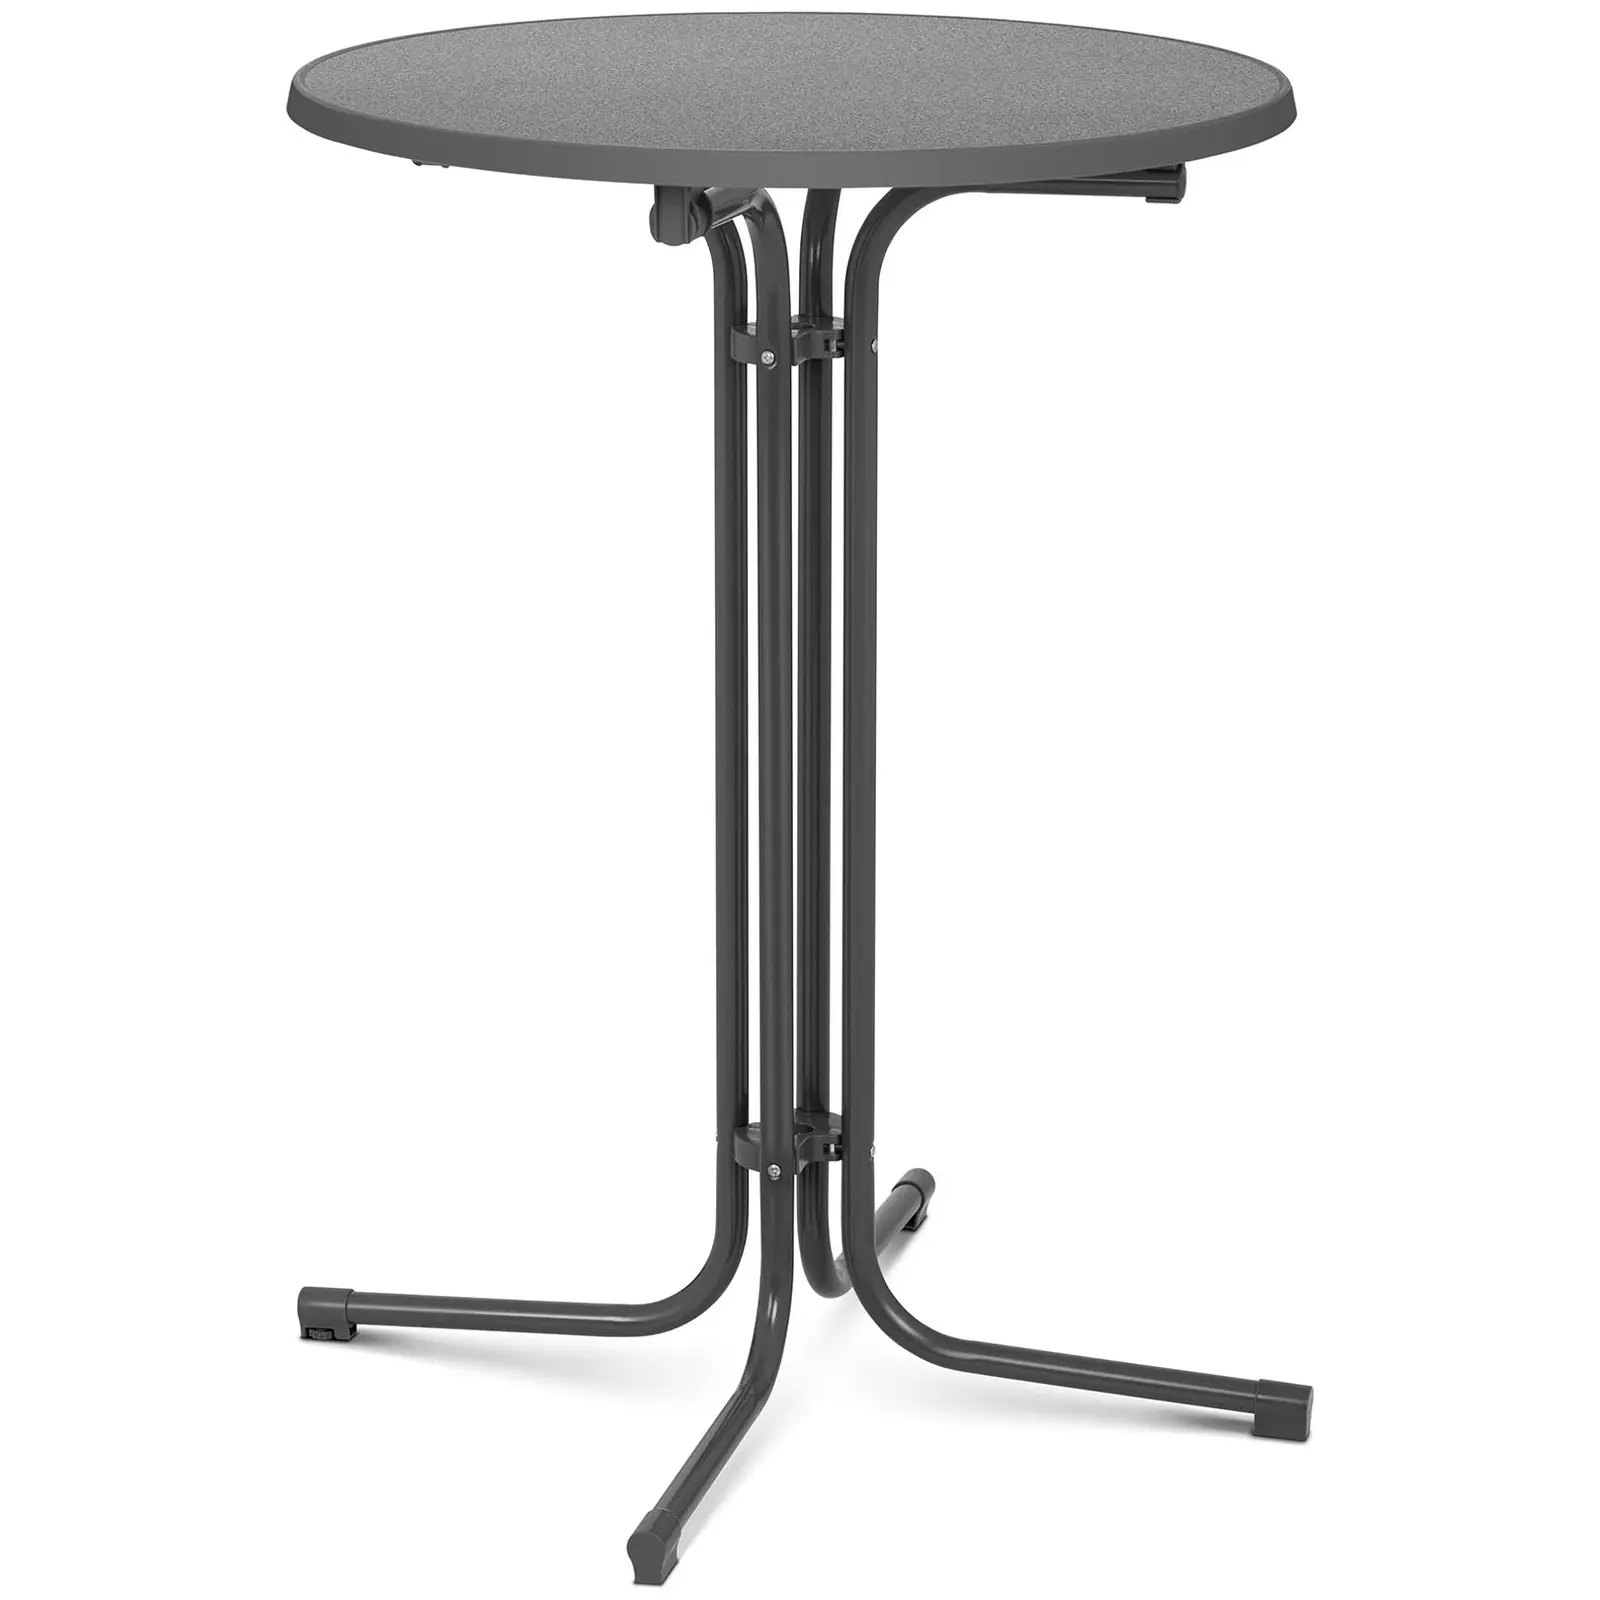 Koktejlový stůl Ø 80 cm skládací šedý - Skládací stoly Royal Catering